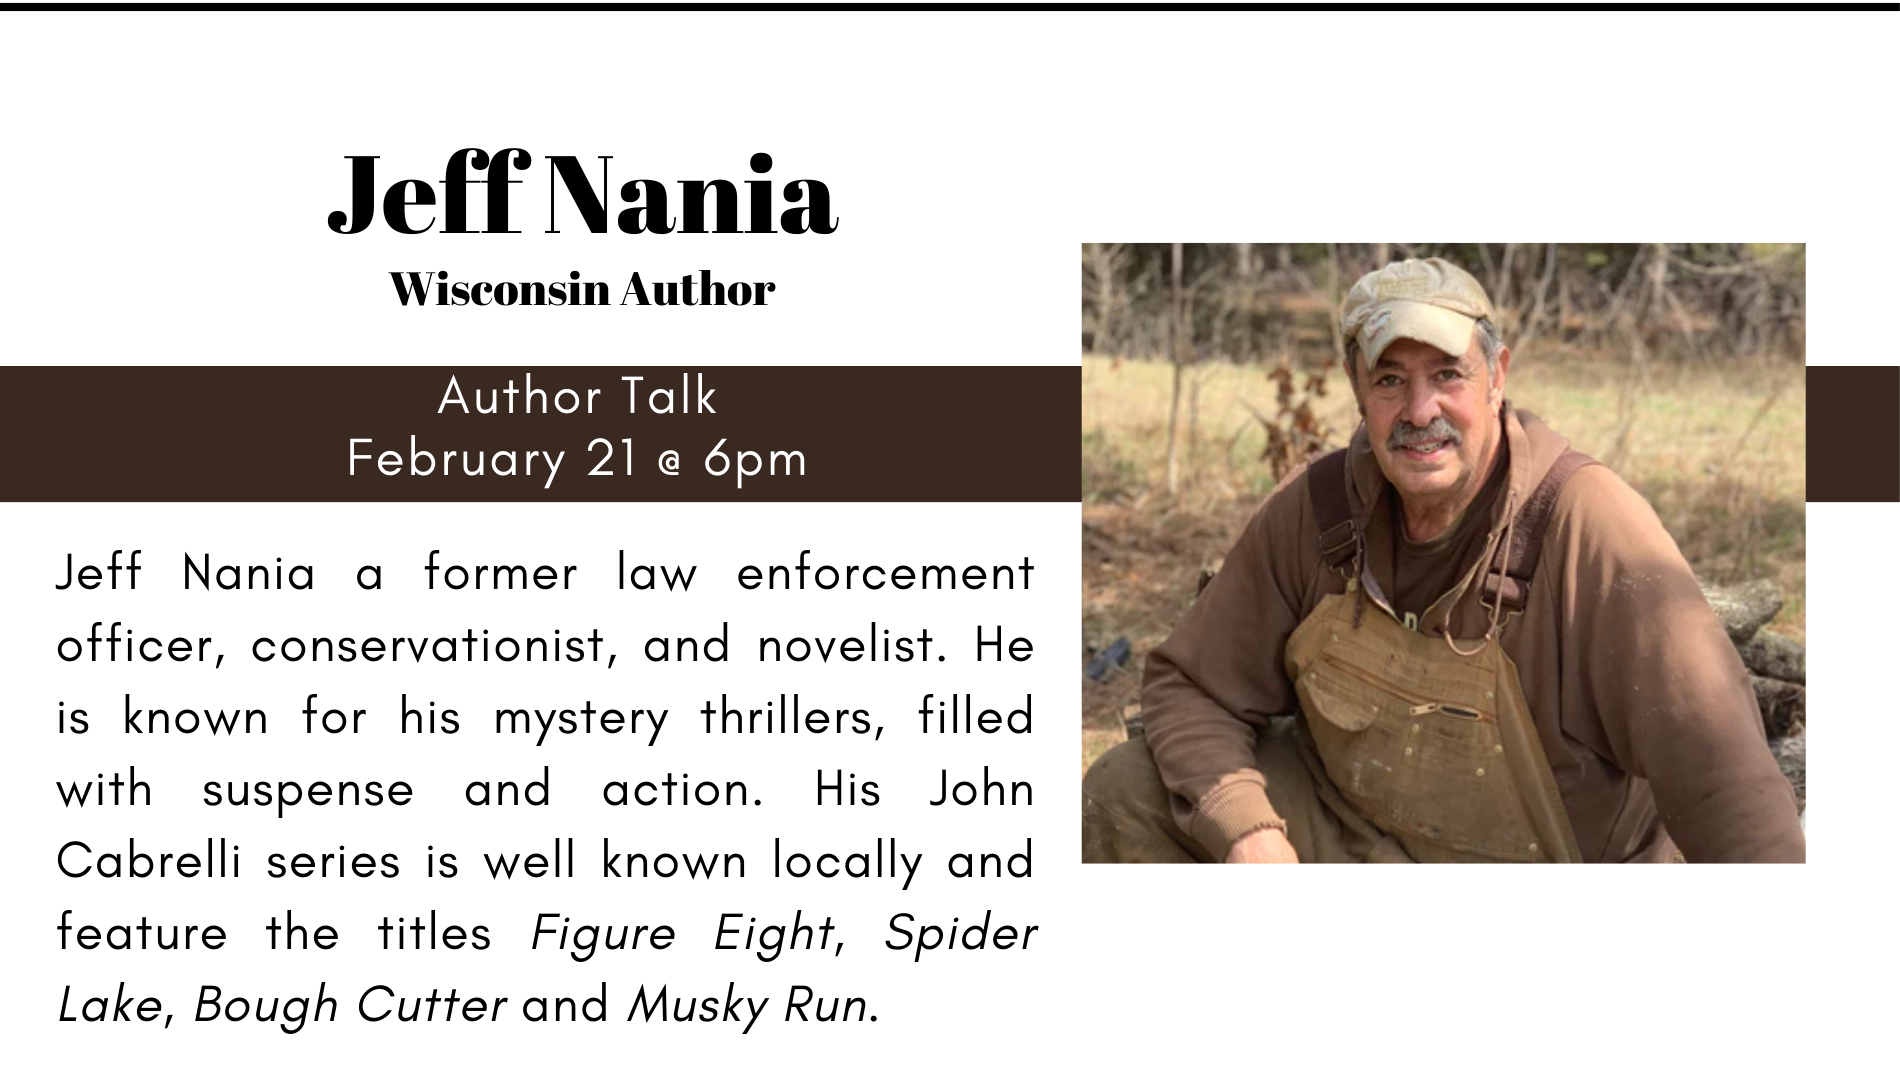 Author Talk: Jeff Nania